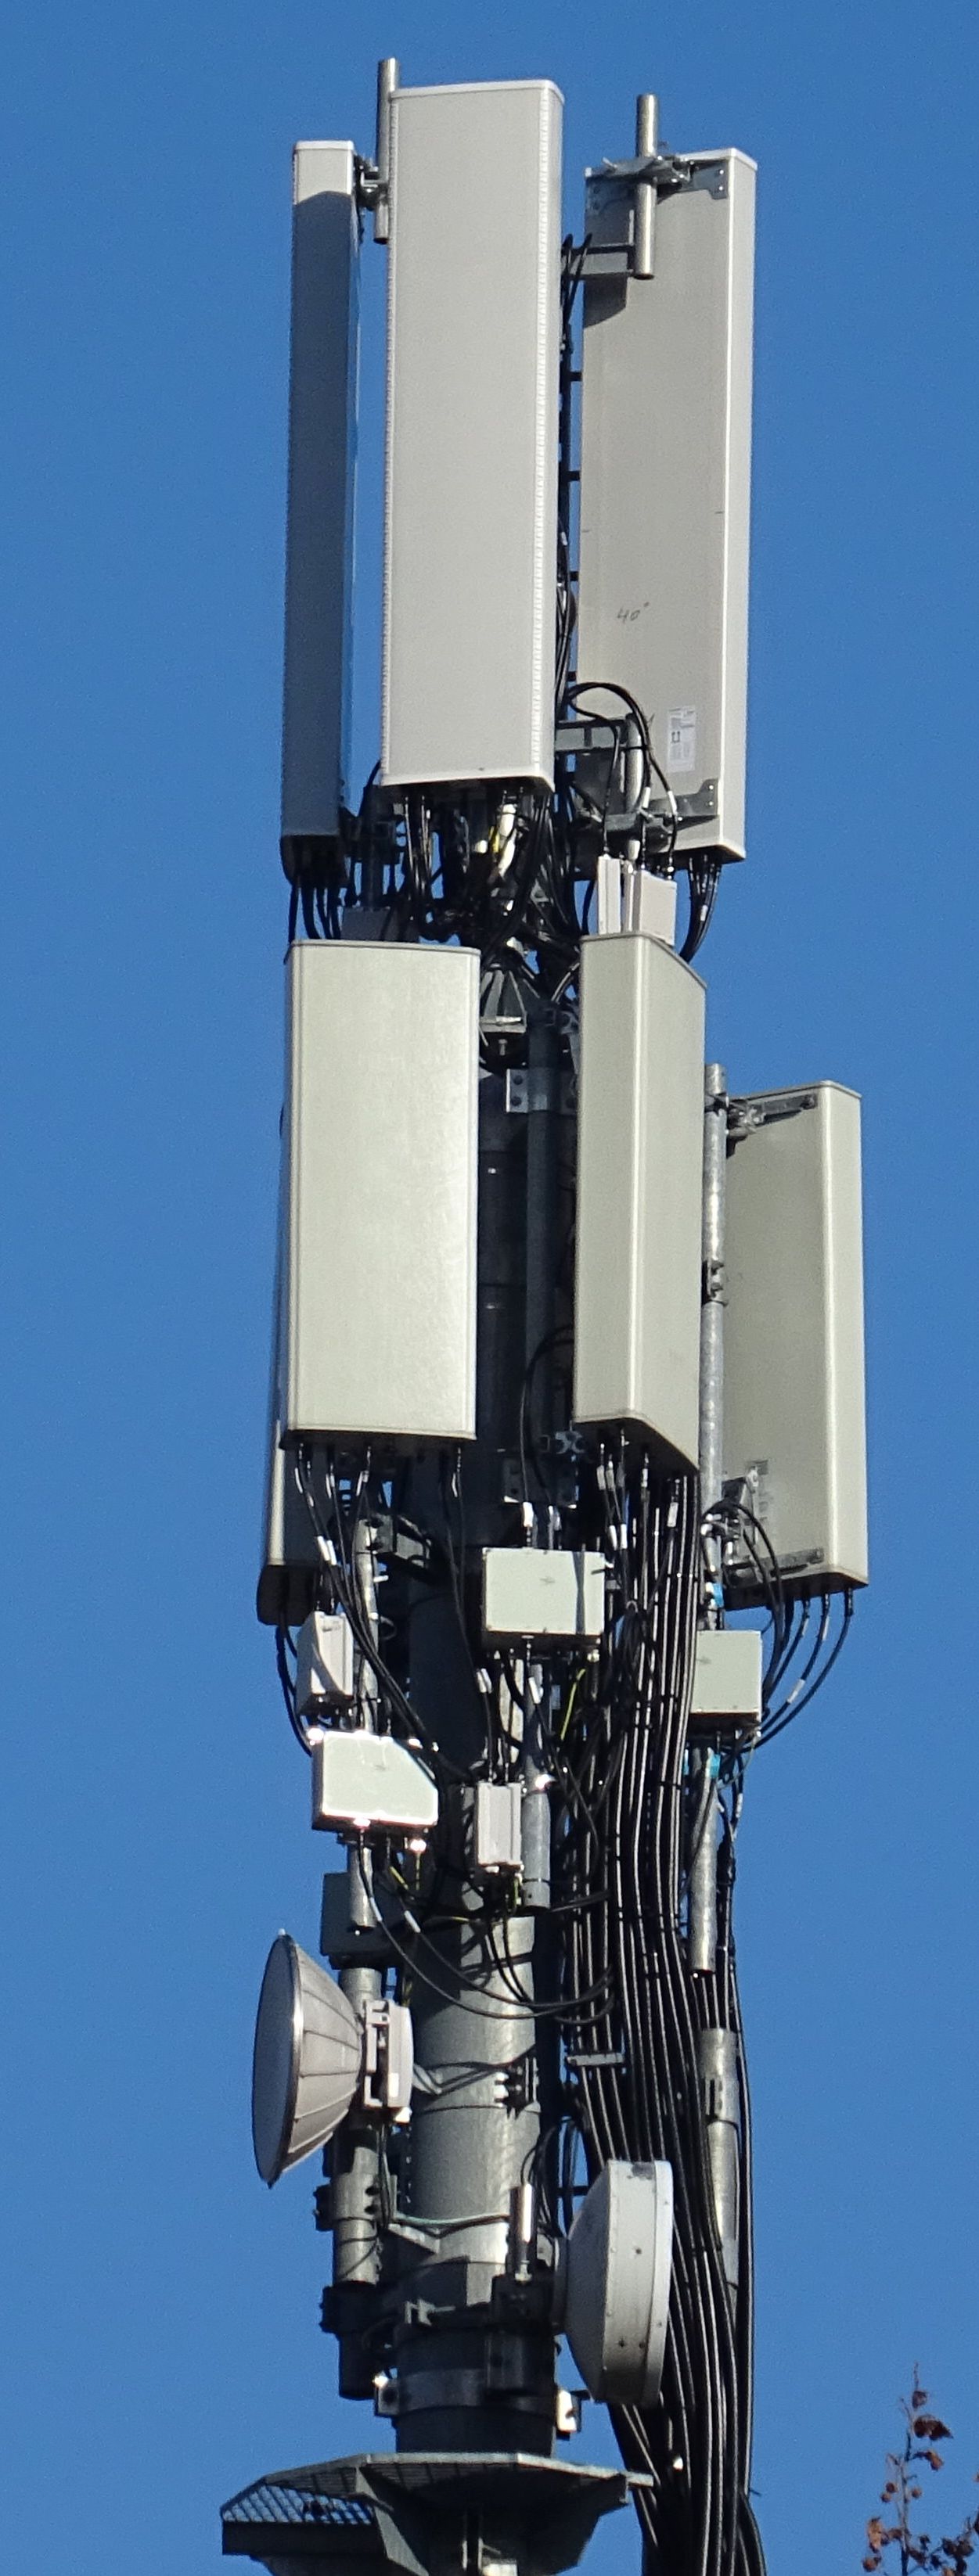 Die Anlage mit den neuen Antennen von Vodafone im Dezember 2020. Foto Daniel Z.